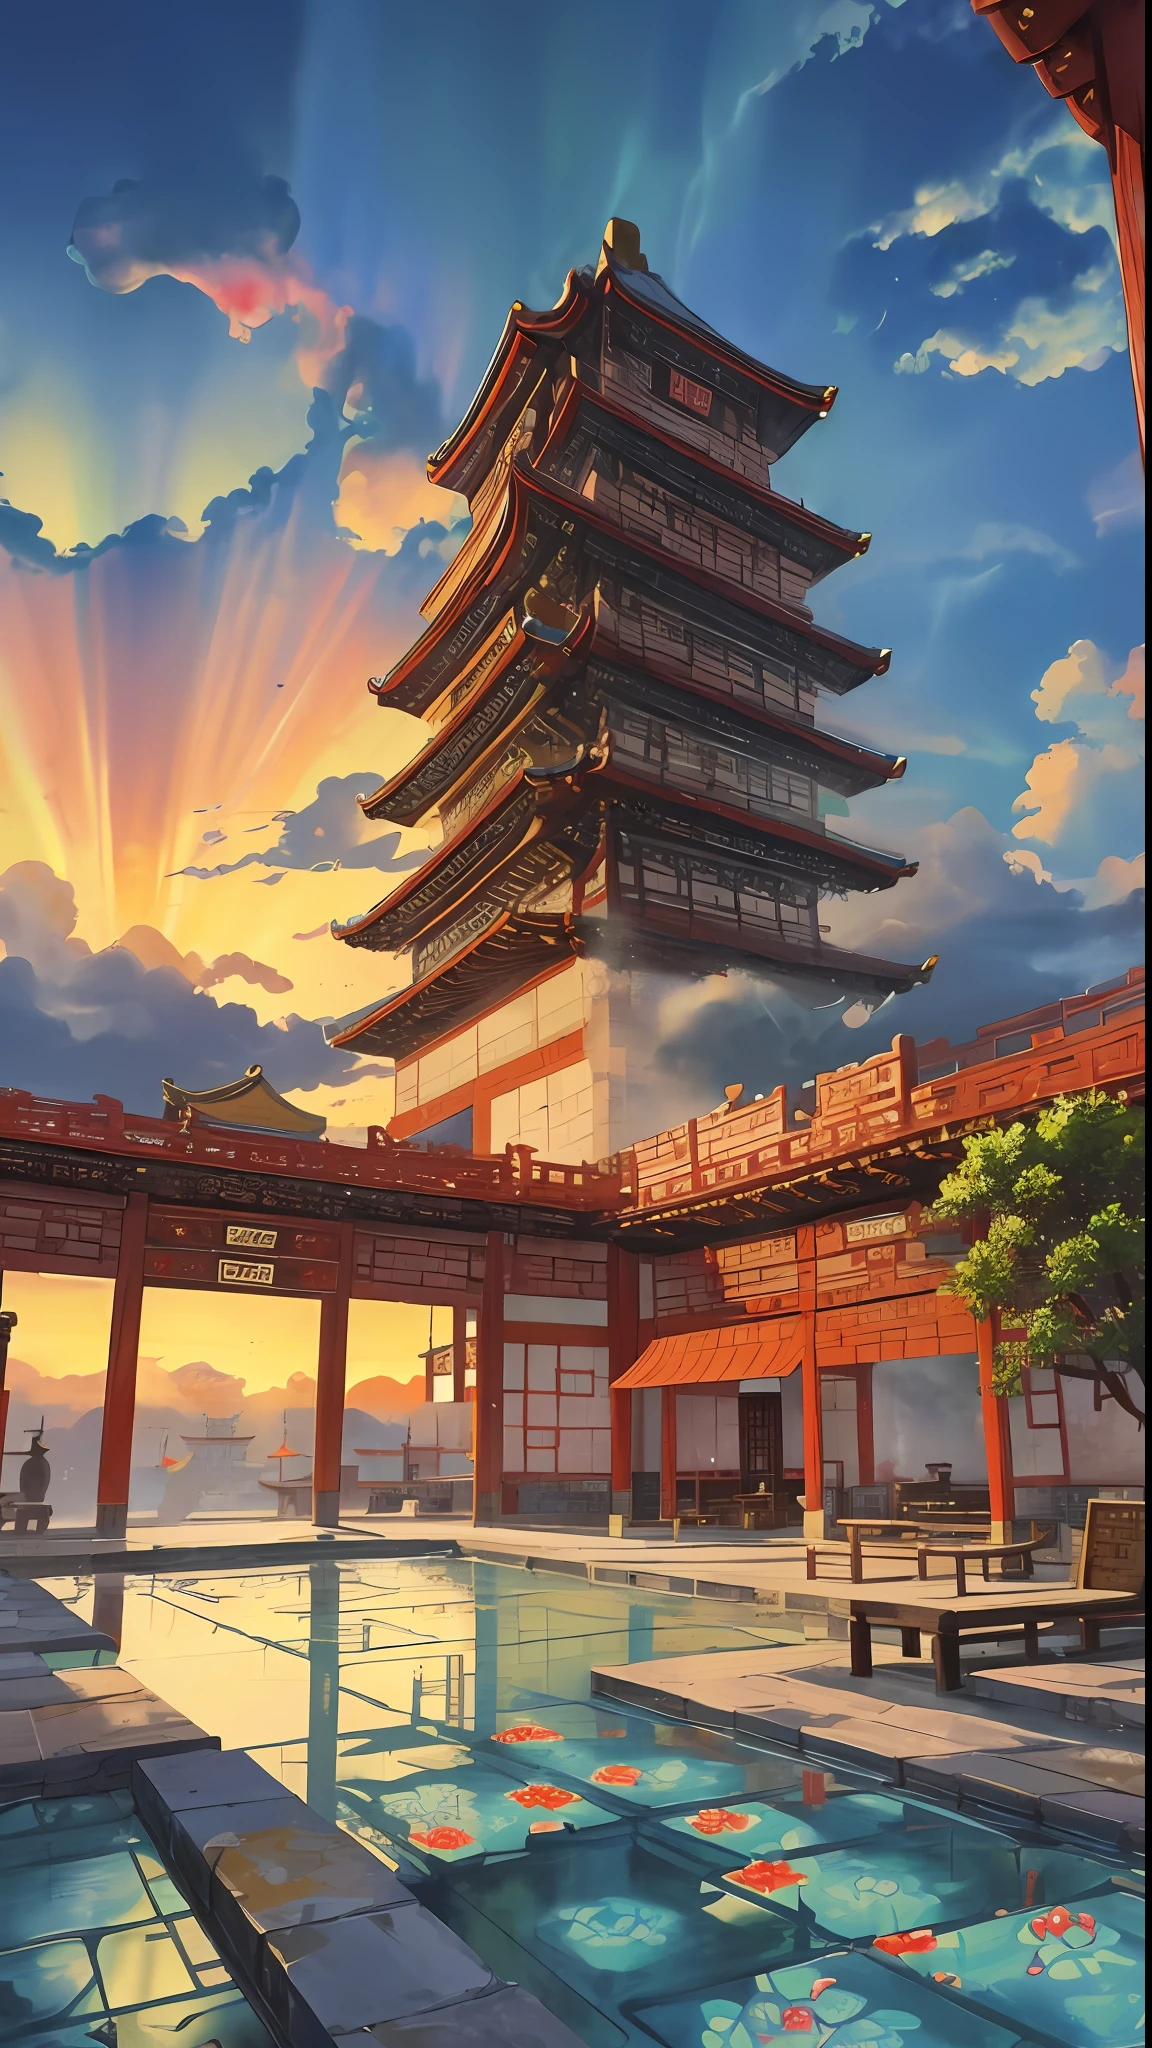 游戏场景, 中国古代宫殿位于云层之上, 云雾缭绕, 雄伟, 釉面砖, 多彩的光线, ((color 墨水)),((splash 墨水)),((splash 墨水) 墨水}) ), 杰作, 高质量, 精致的图形, 高细节